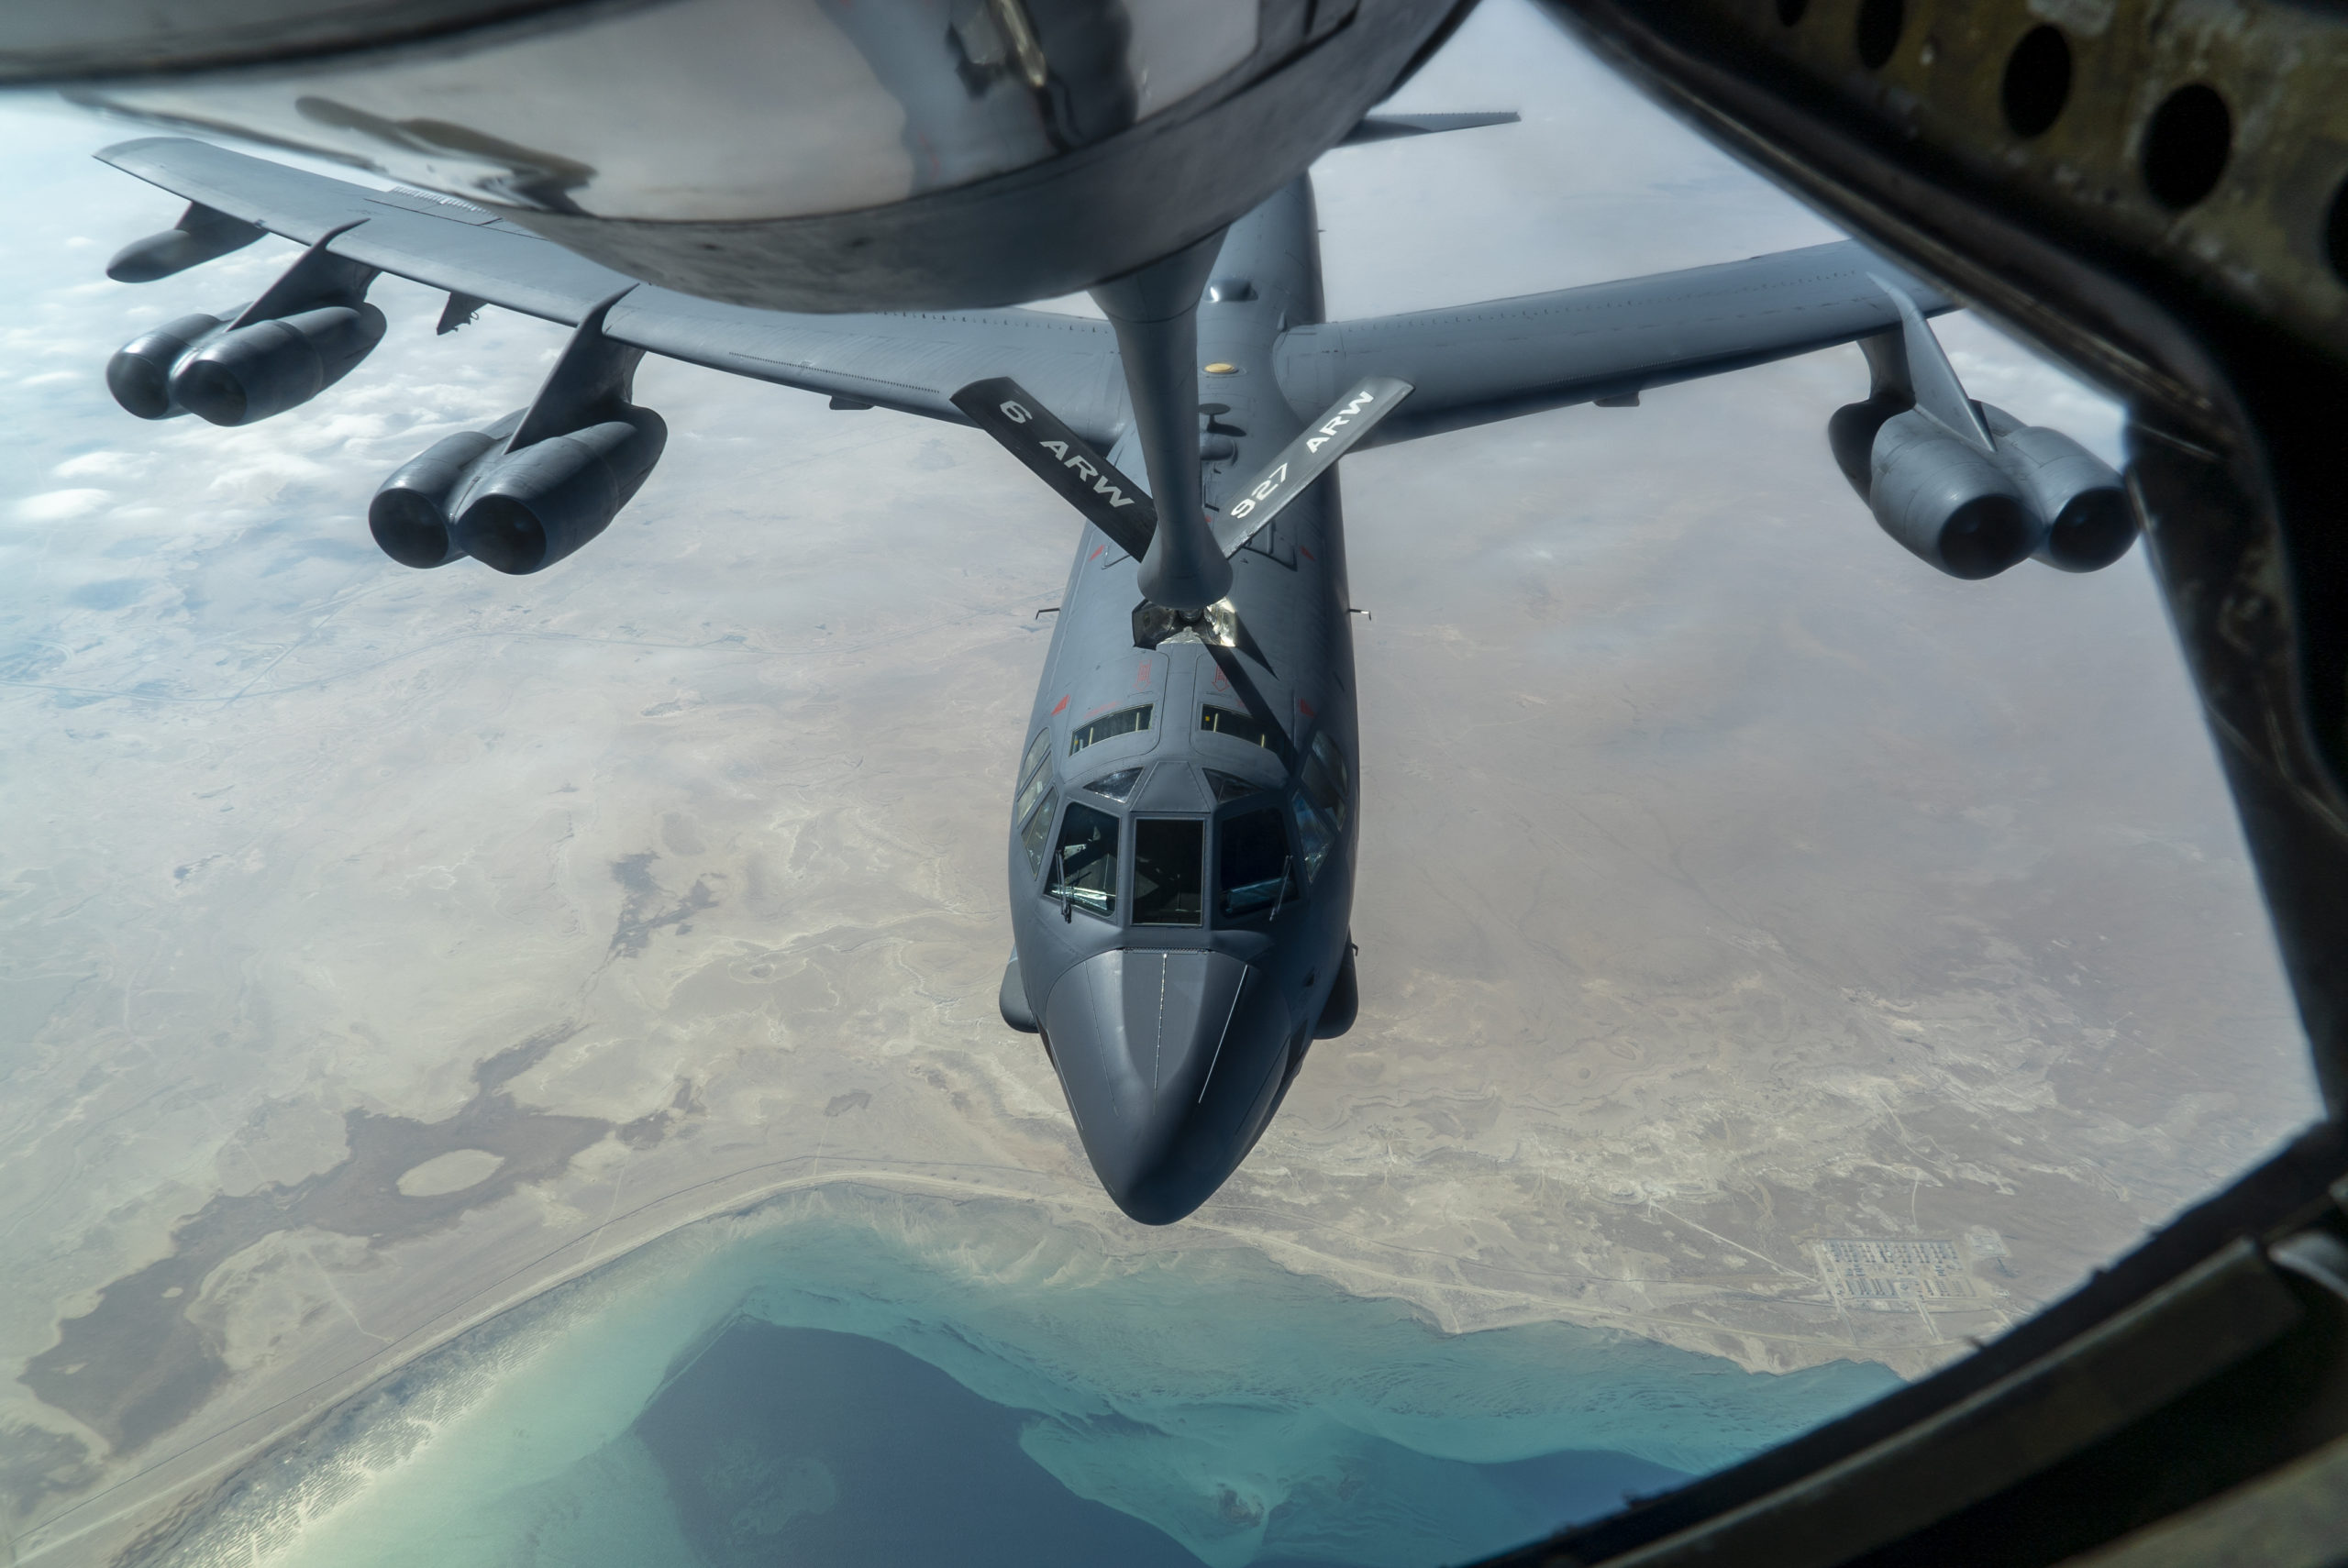 Αυστραλία: Στρατηγικά βομβαρδιστικά Β-52 εγκαθιστούν μόνιμα στην χώρα οι ΗΠΑ, με το βλέμμα στην Κίνα